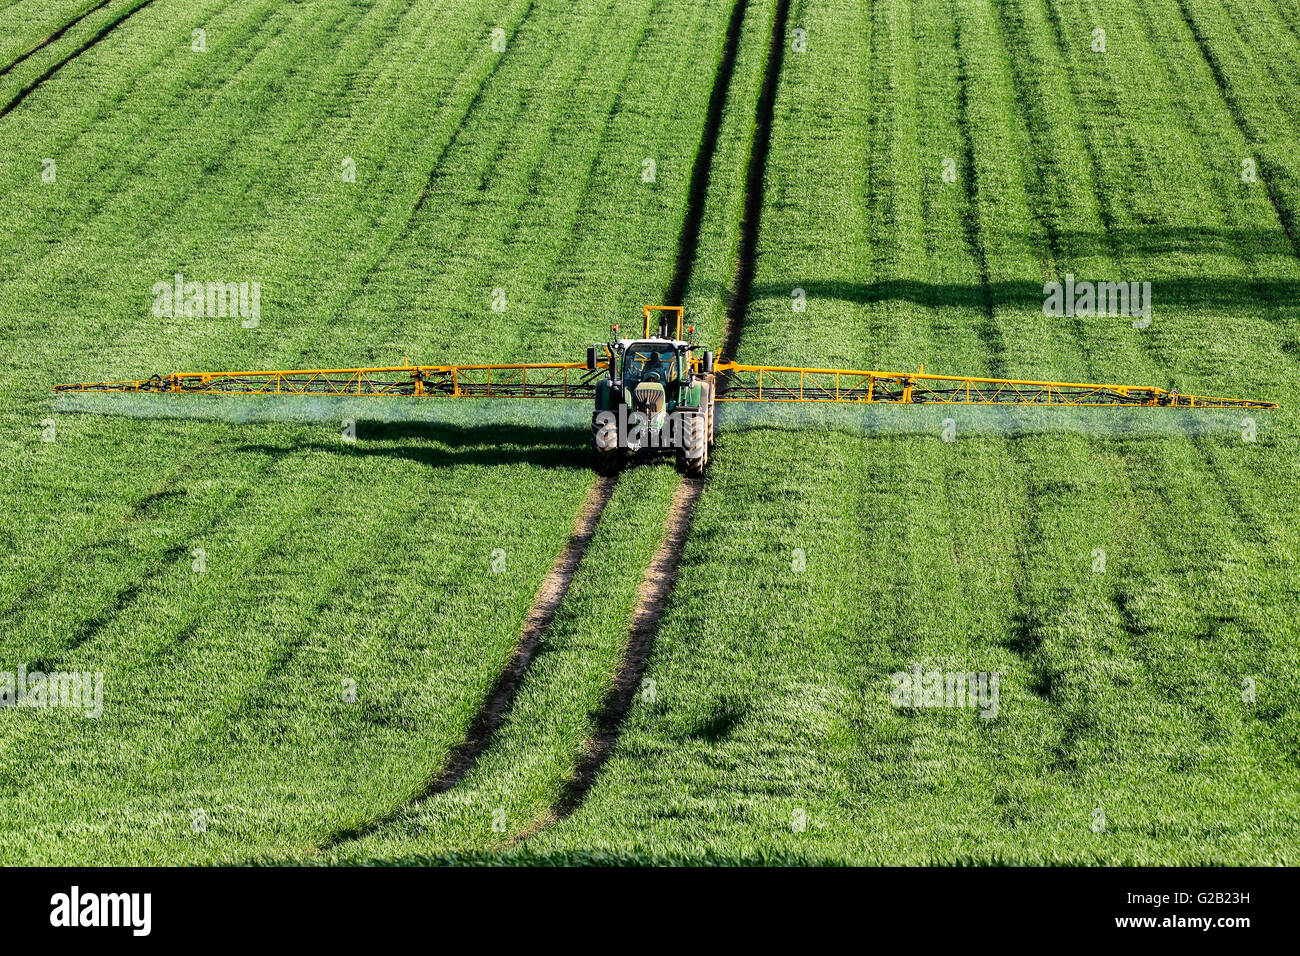 Landwirtschaft - Spritzen Dünger auf Weizen Ernte - North Yorkshire - England. Stockfoto